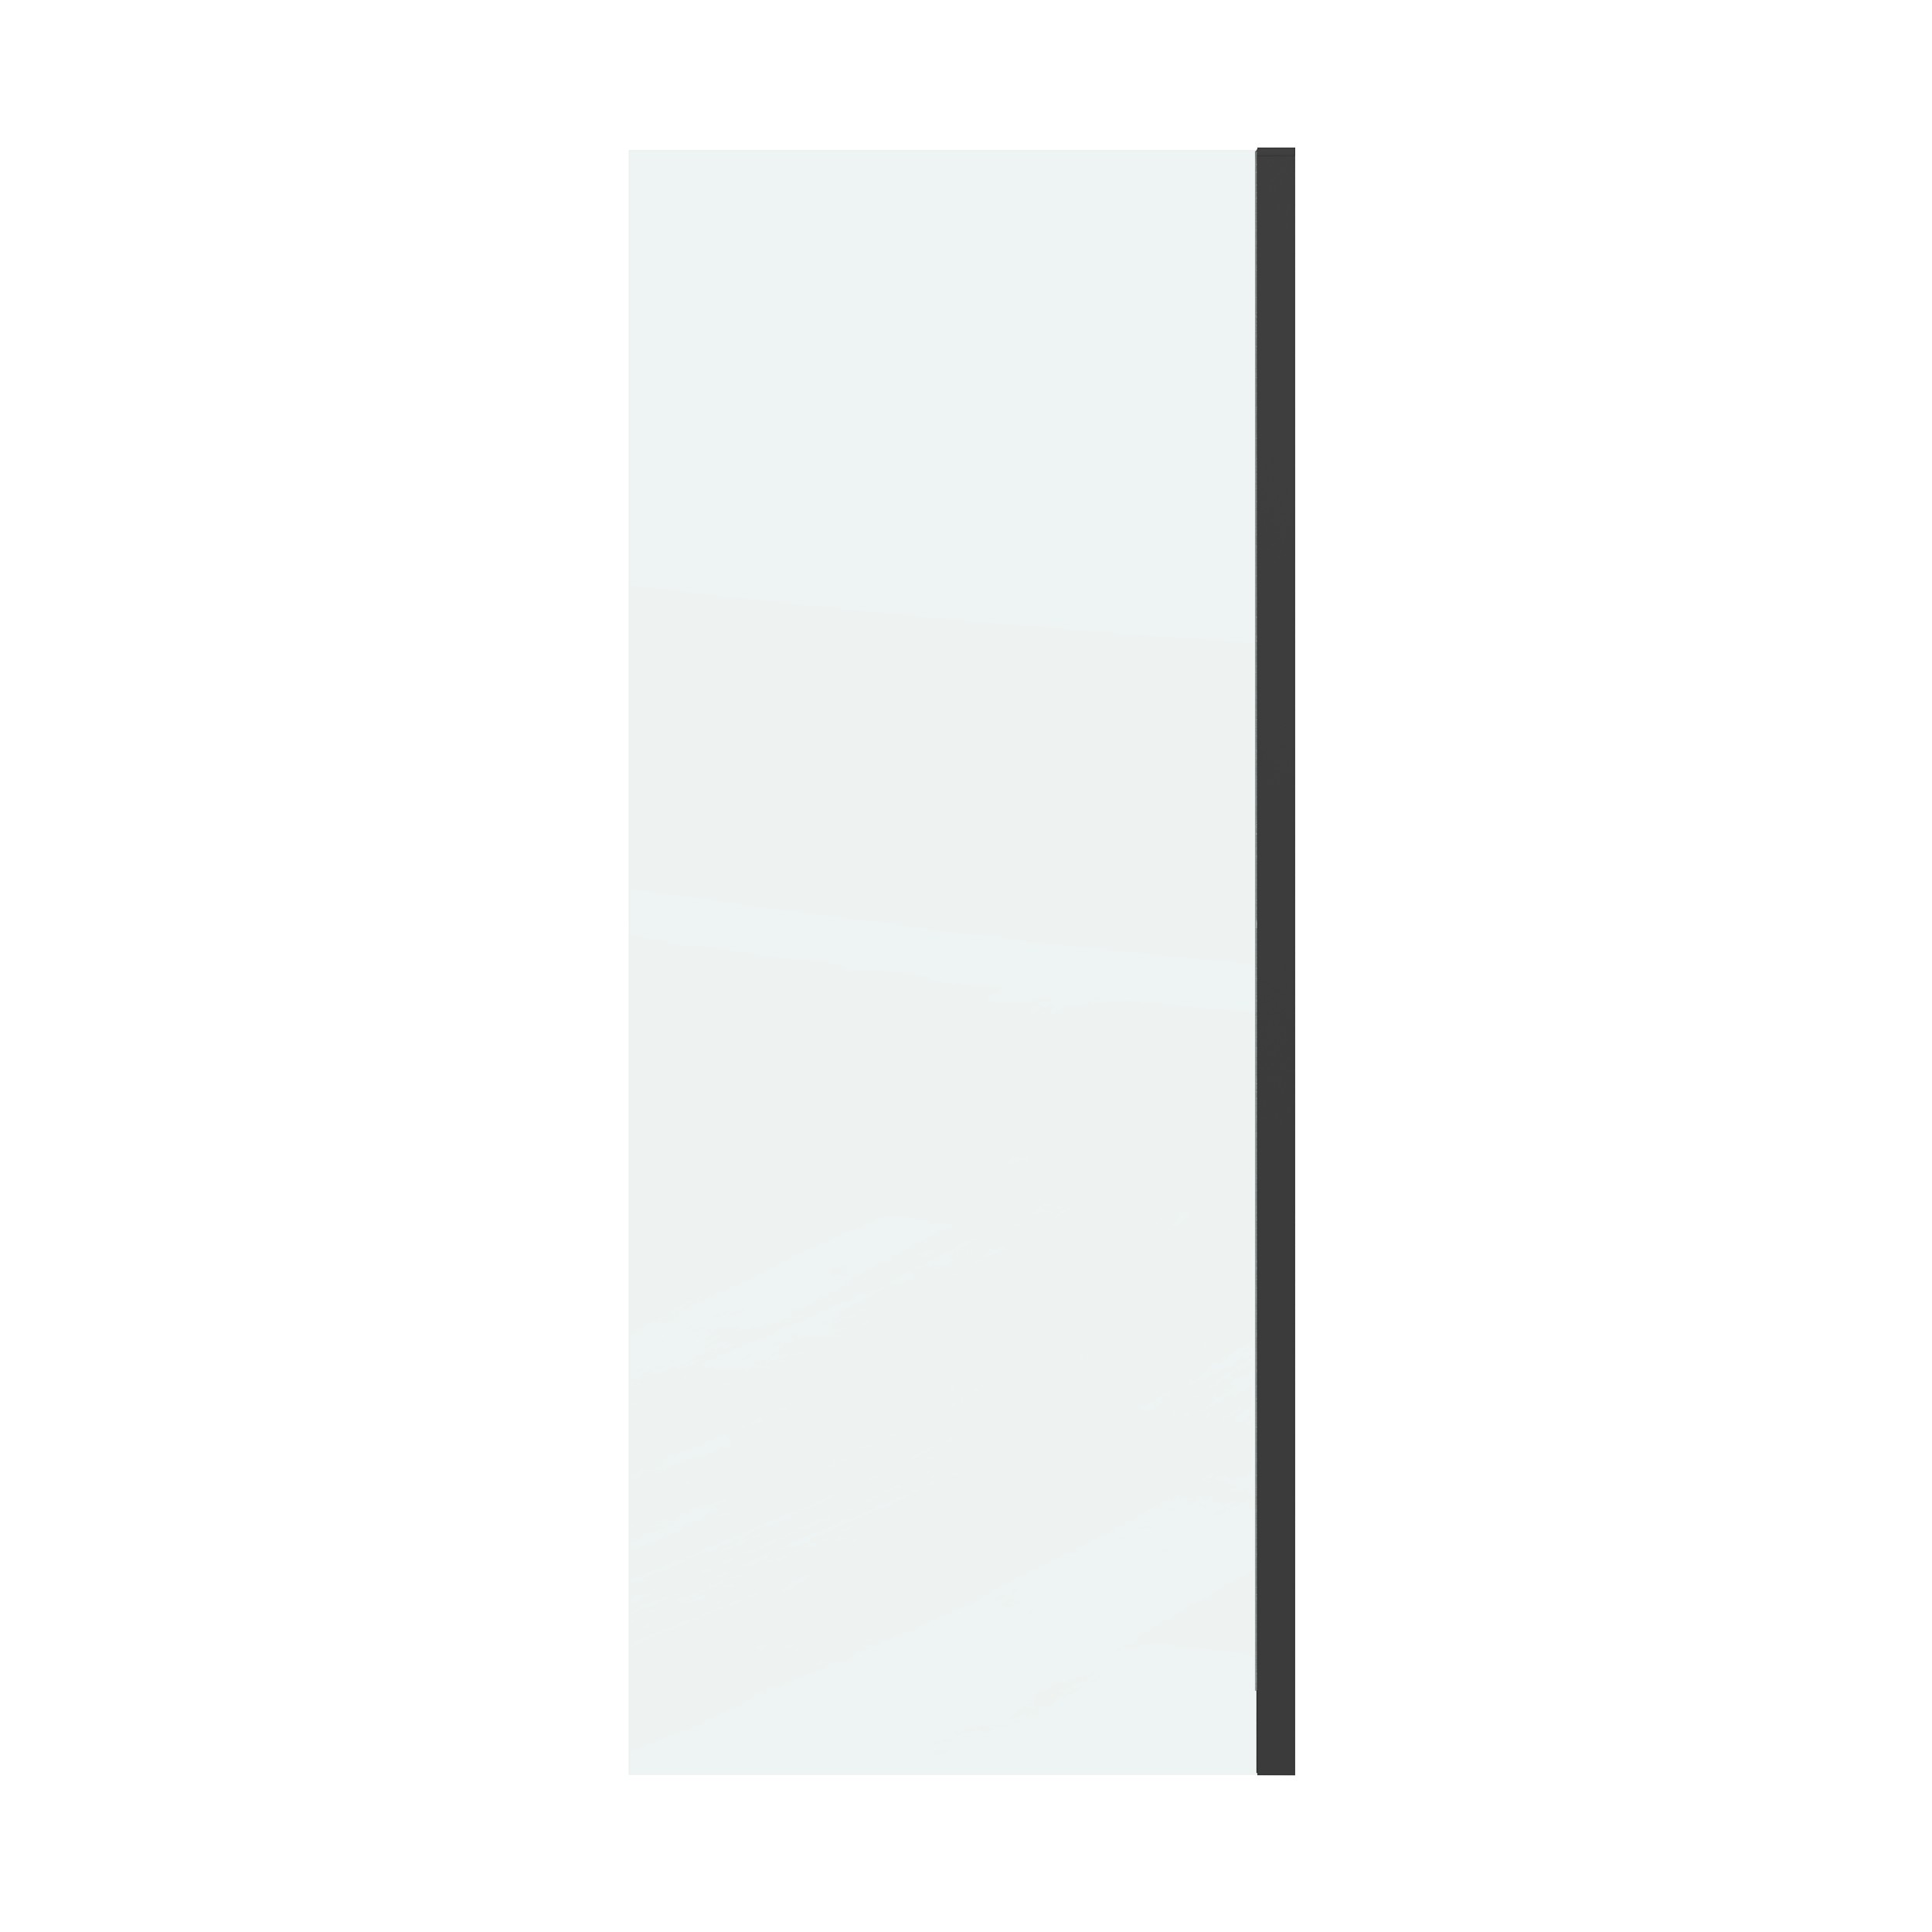 Боковая стенка Grossman Classic 90x195 200.K33.04.90.21.00 стекло прозрачное, профиль черный матовый - фото 1